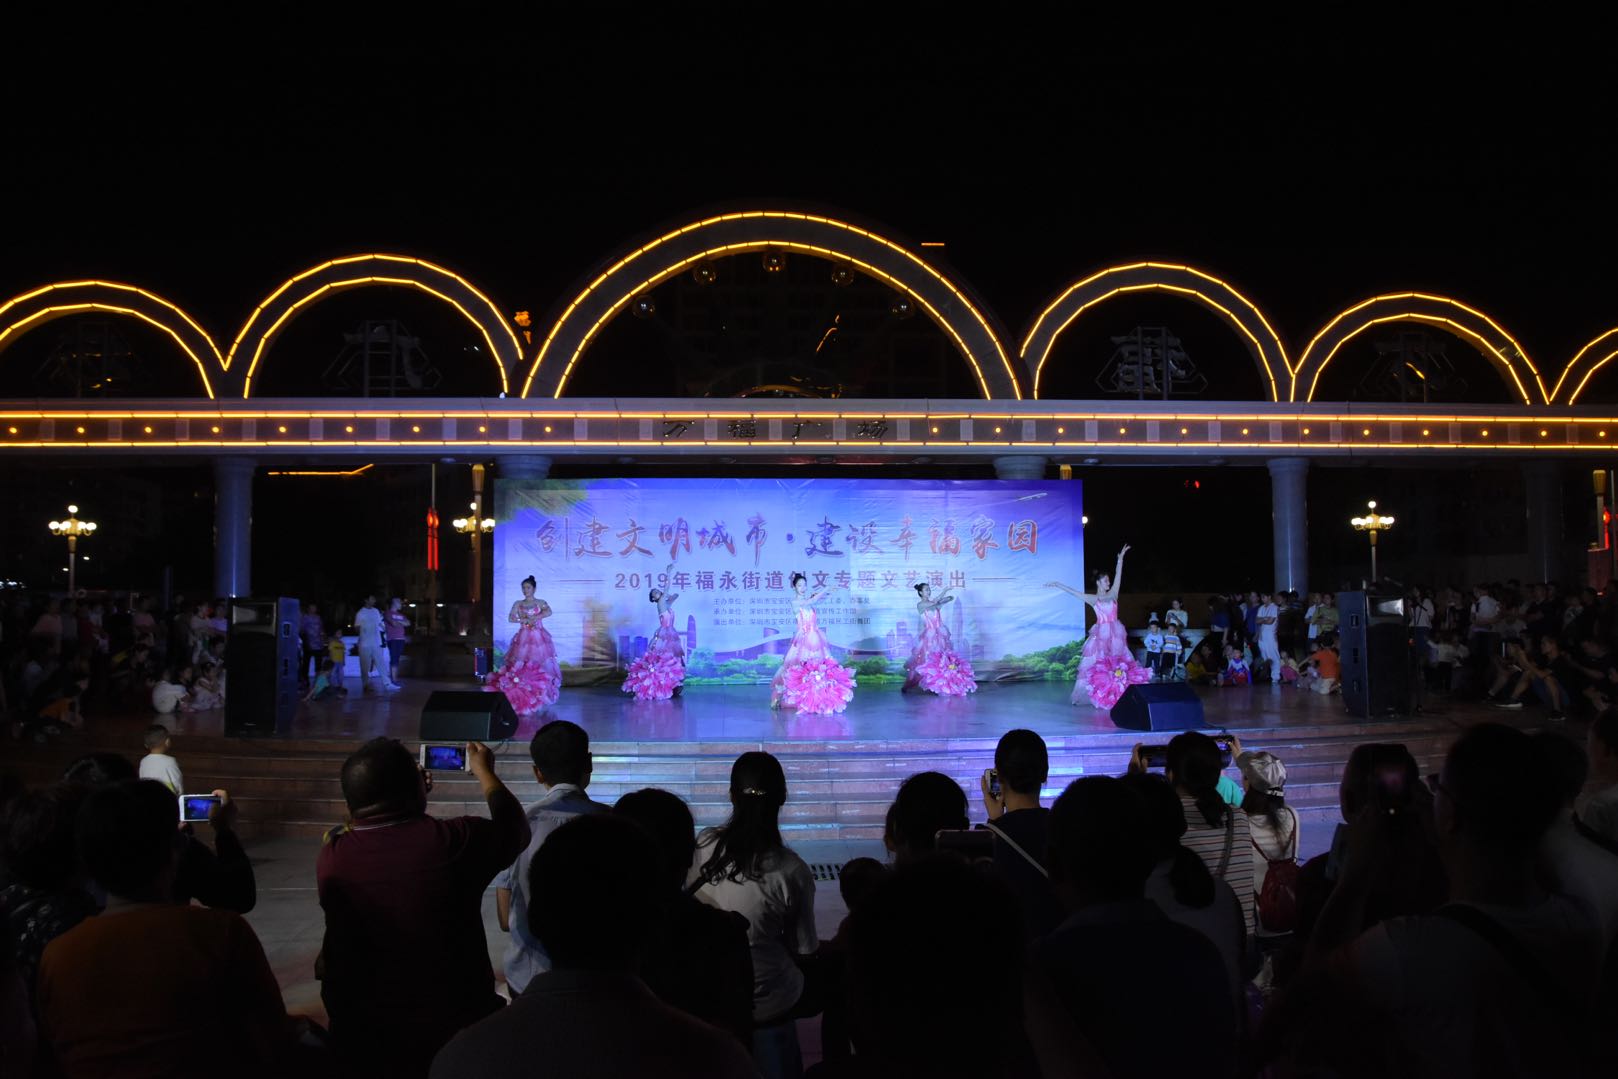 11月2日晚,福永街道在万福广场举办了创建文明城市·建设幸福家园为